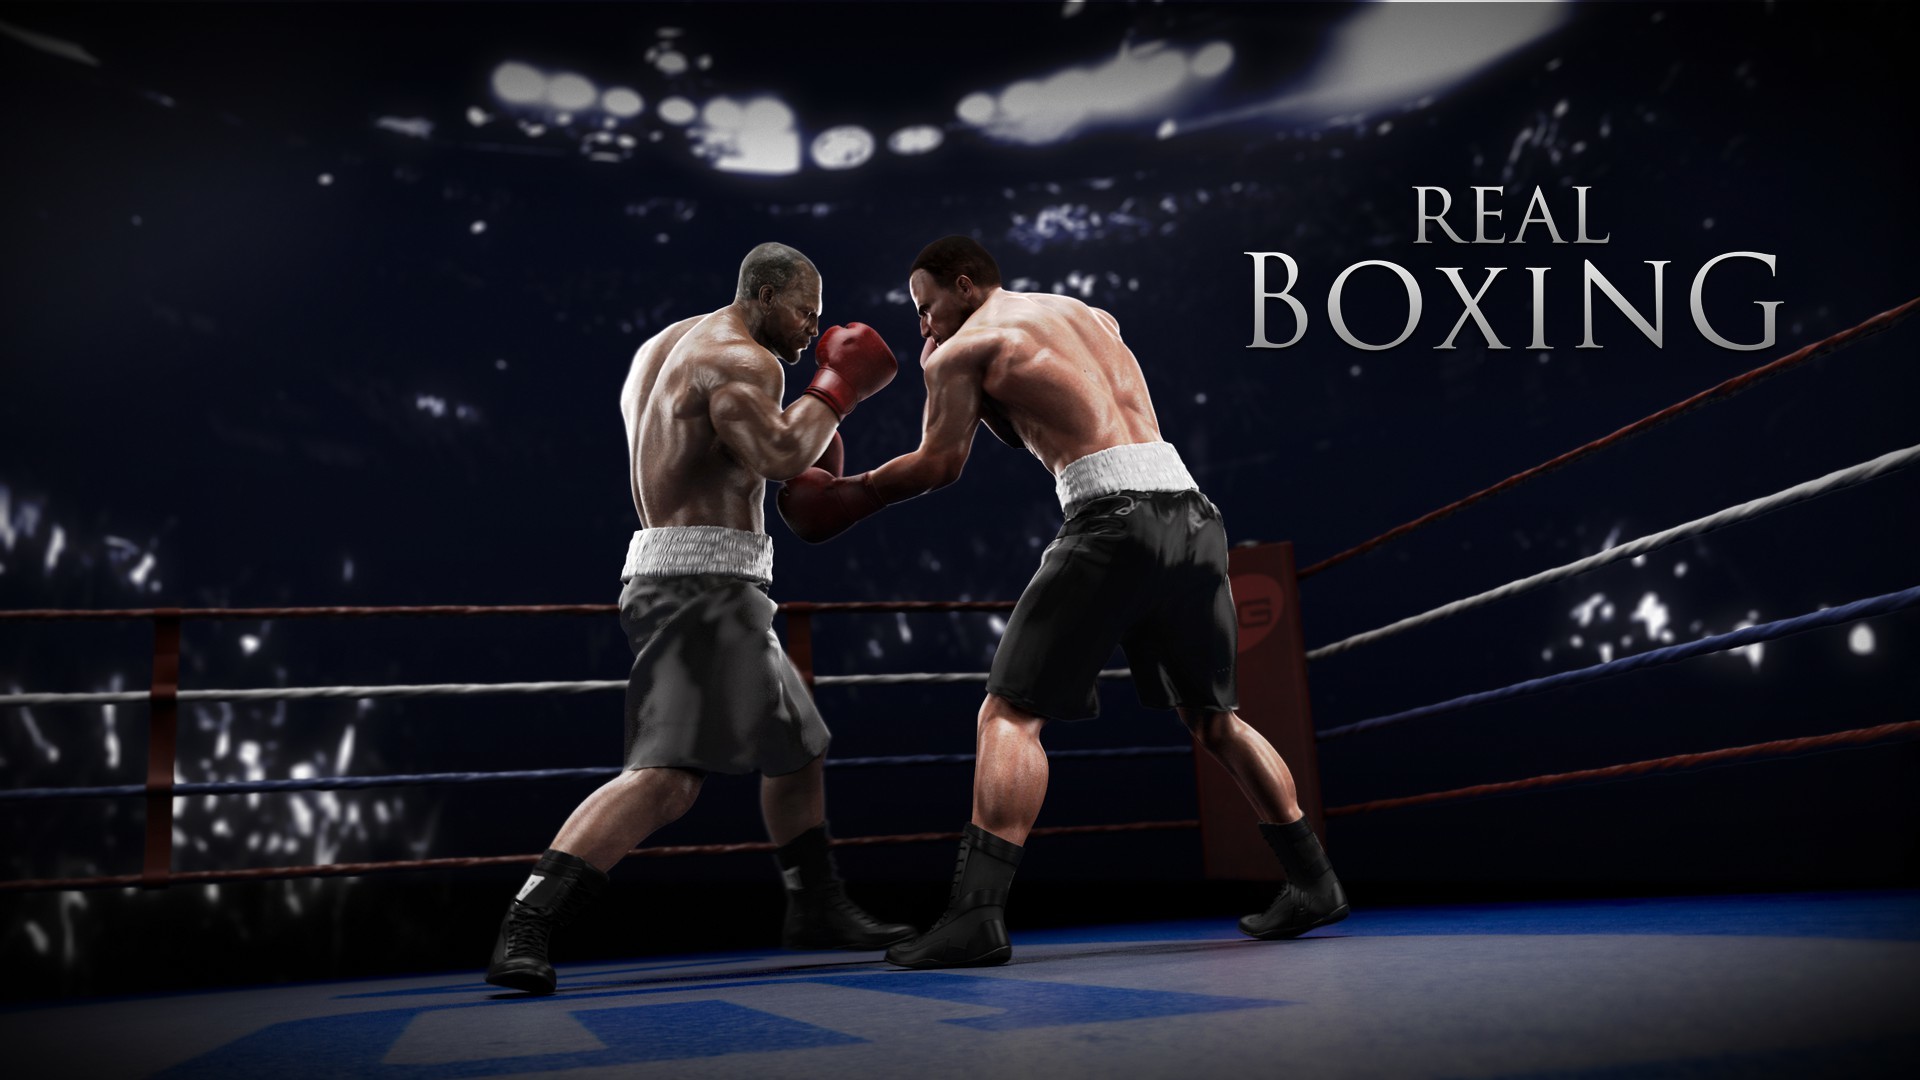 real boxing 2 cheats